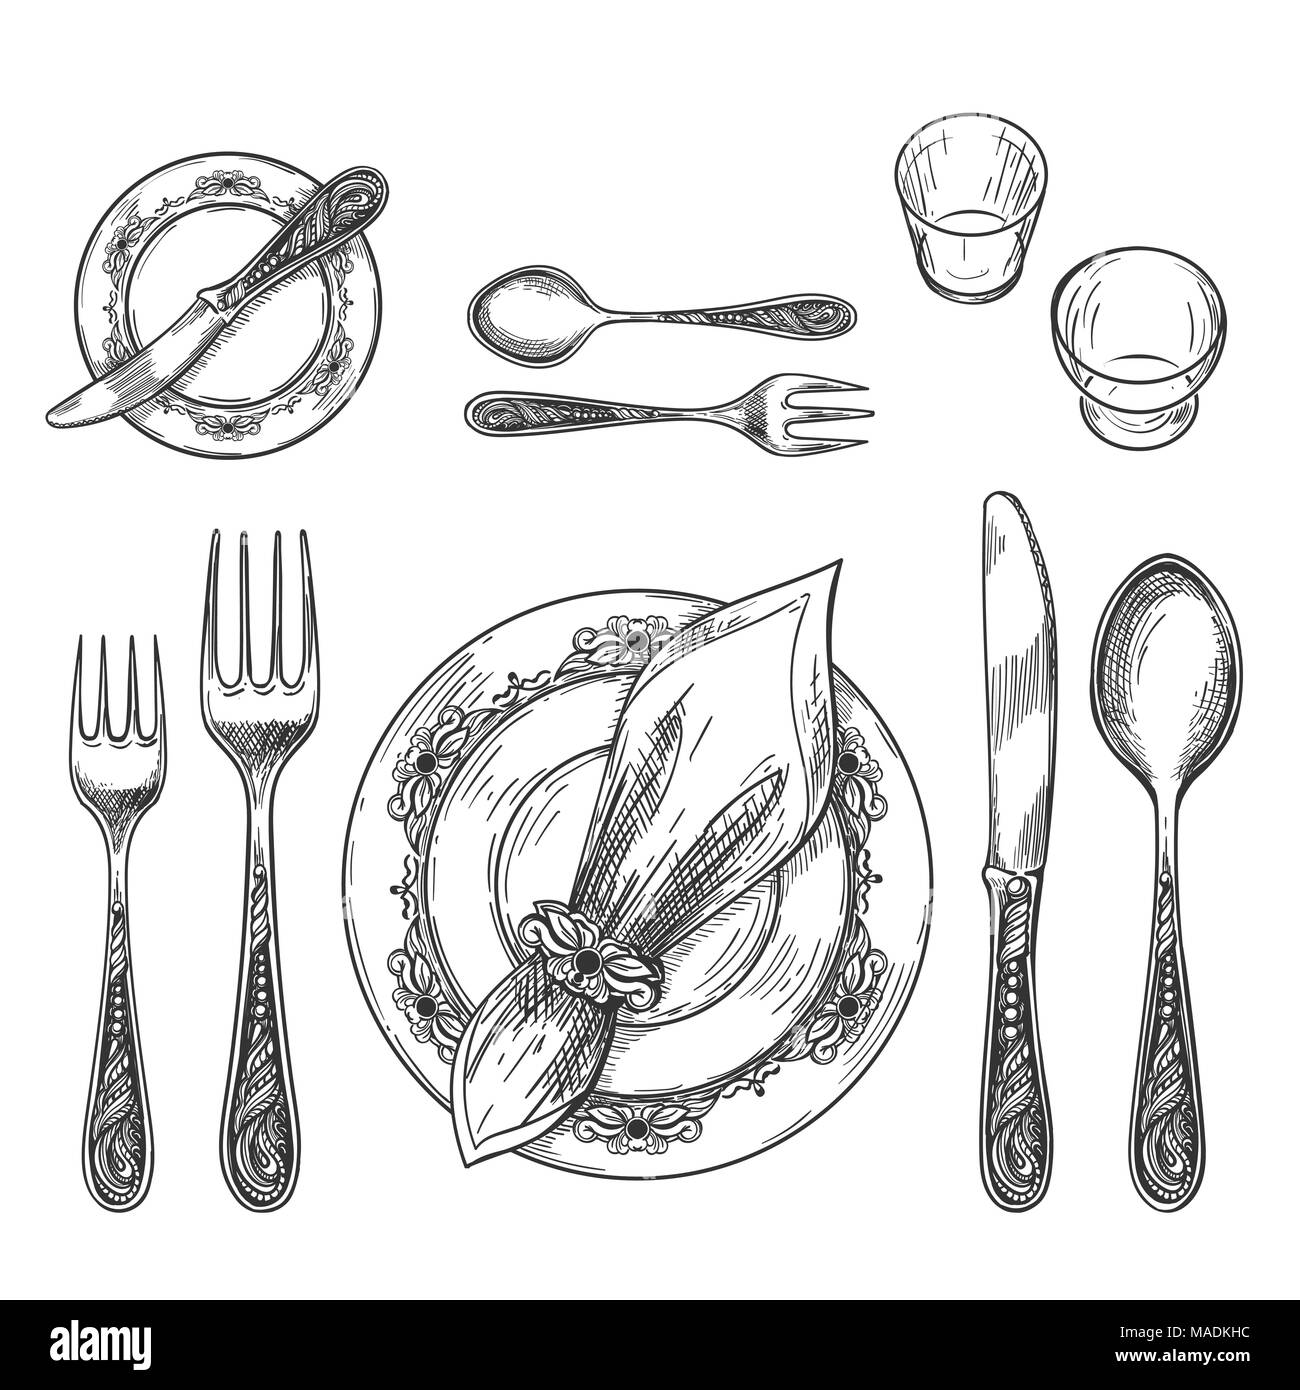 Tabelle der Zeichnung. Handzeichnung Geschirr mit Serviette in Ring und Platte, dekorative Messer und Gabel Skizze und Glas auf dem Tisch für Etikette formale Stock Vektor